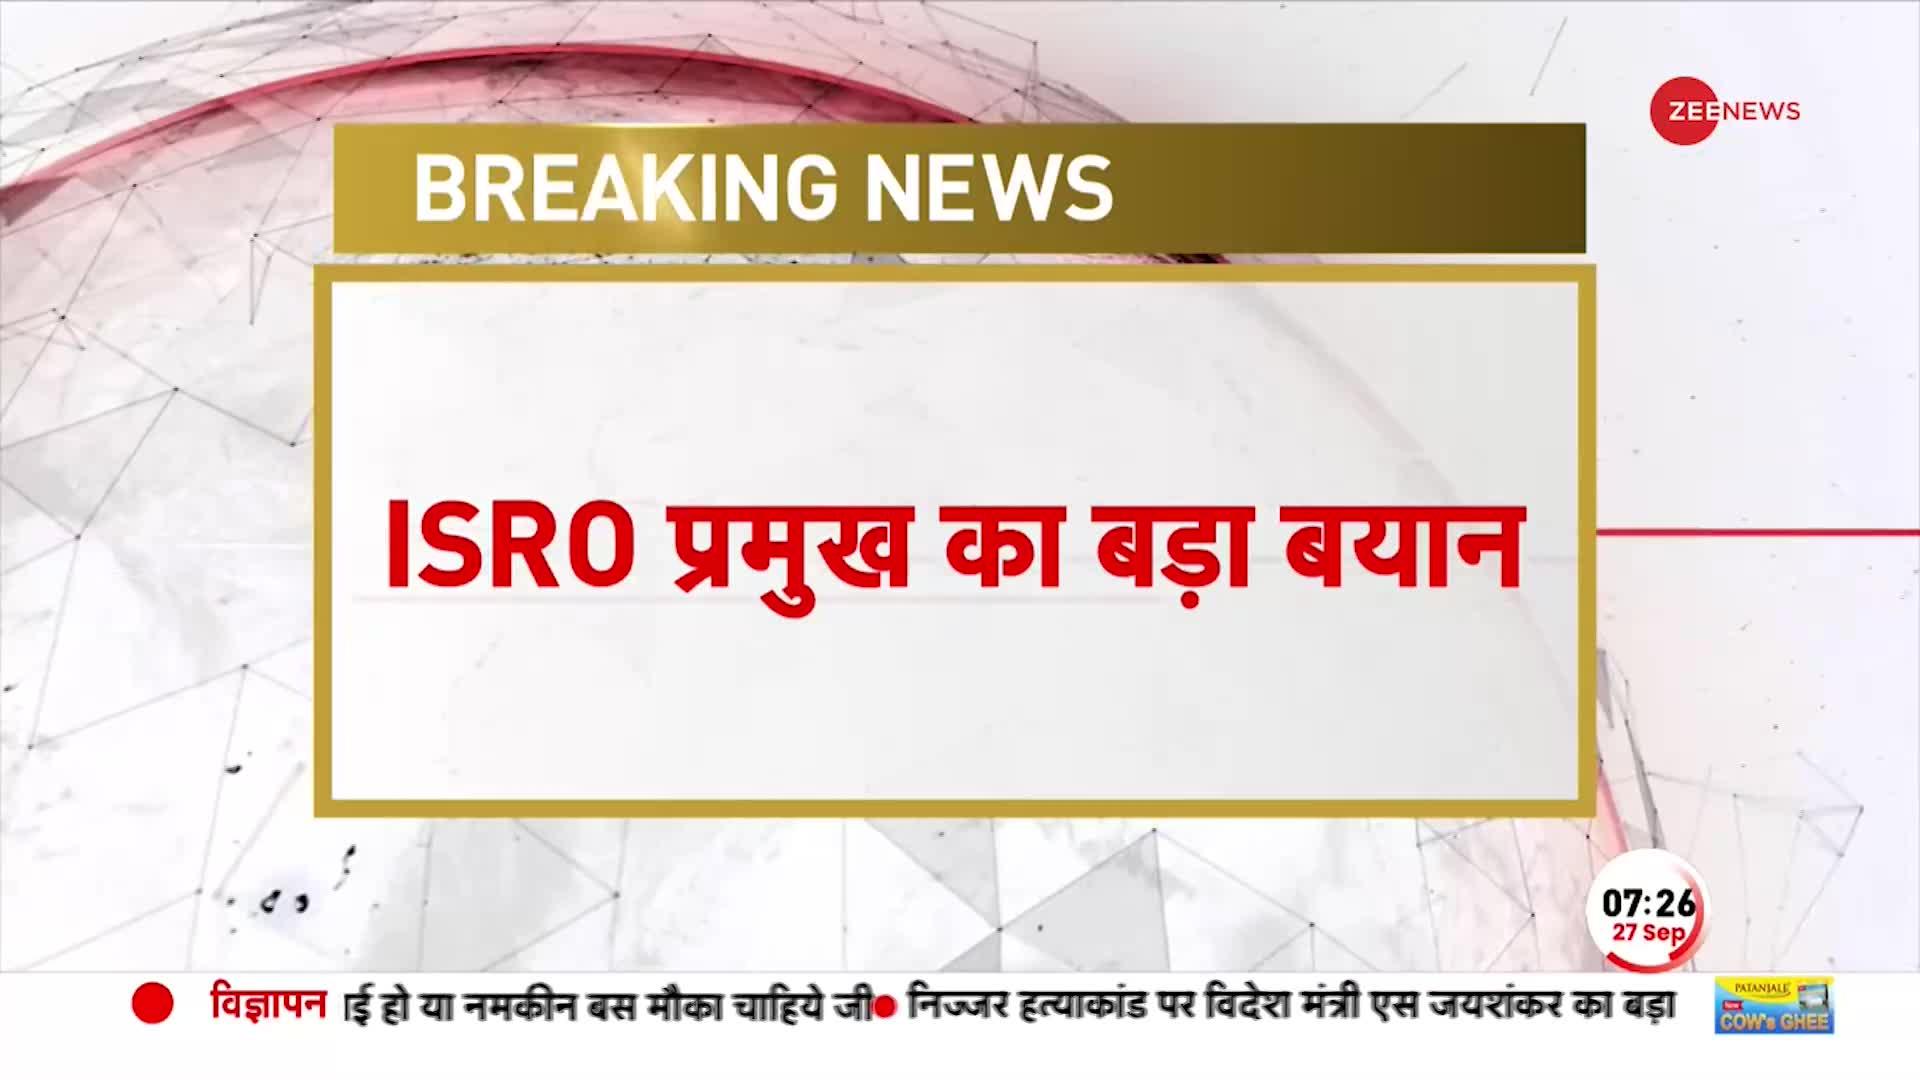 ISRO Breaking: ISRO Chief का बड़ा बयान-Mangal पर अंतरिक्षयान भेजेगा इसरो